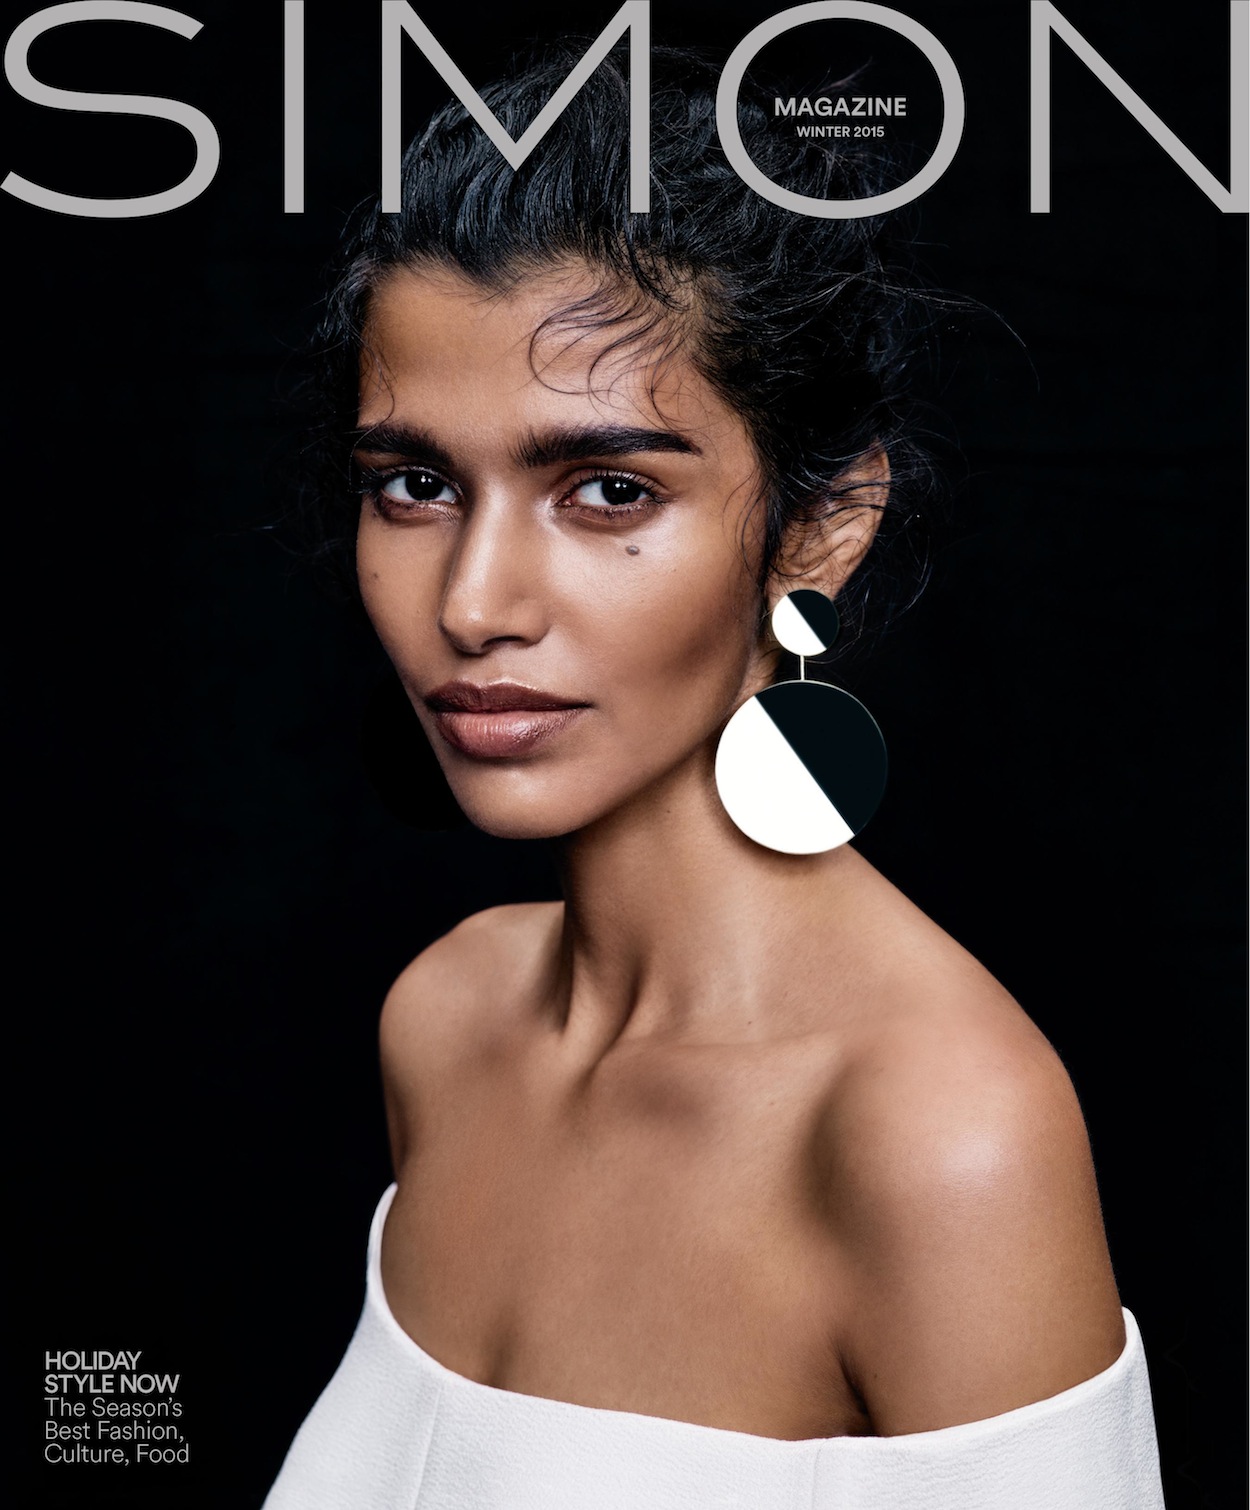 simon magazine 01